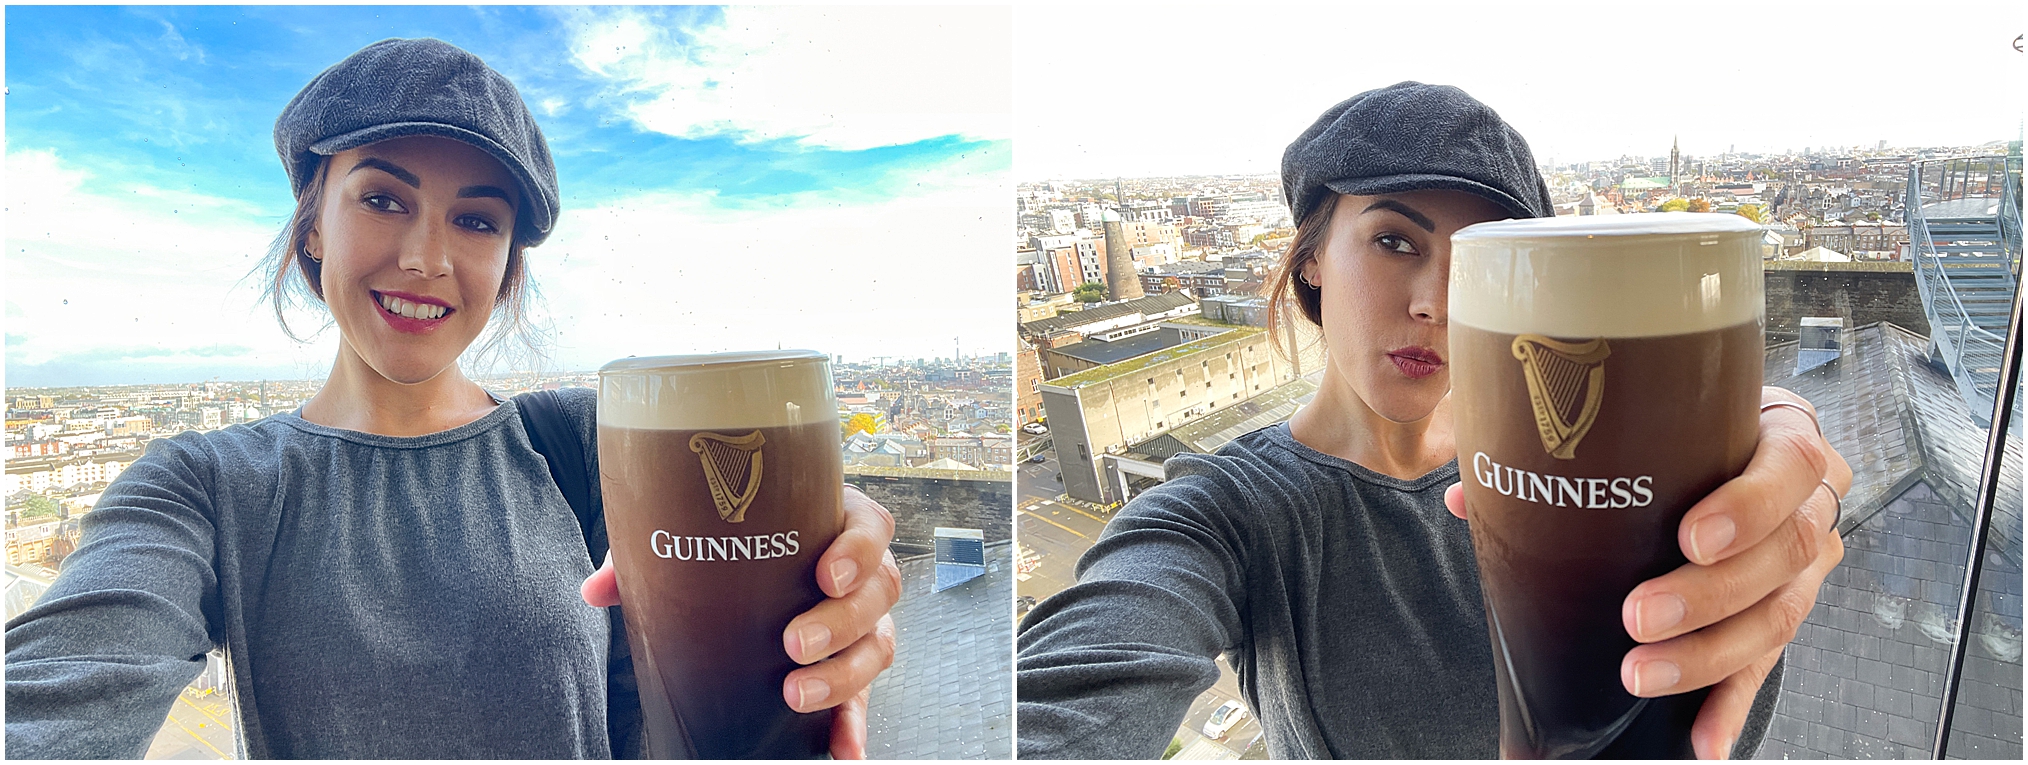 St. James's Gate Guinness Brewery, Dublin, Ireland.